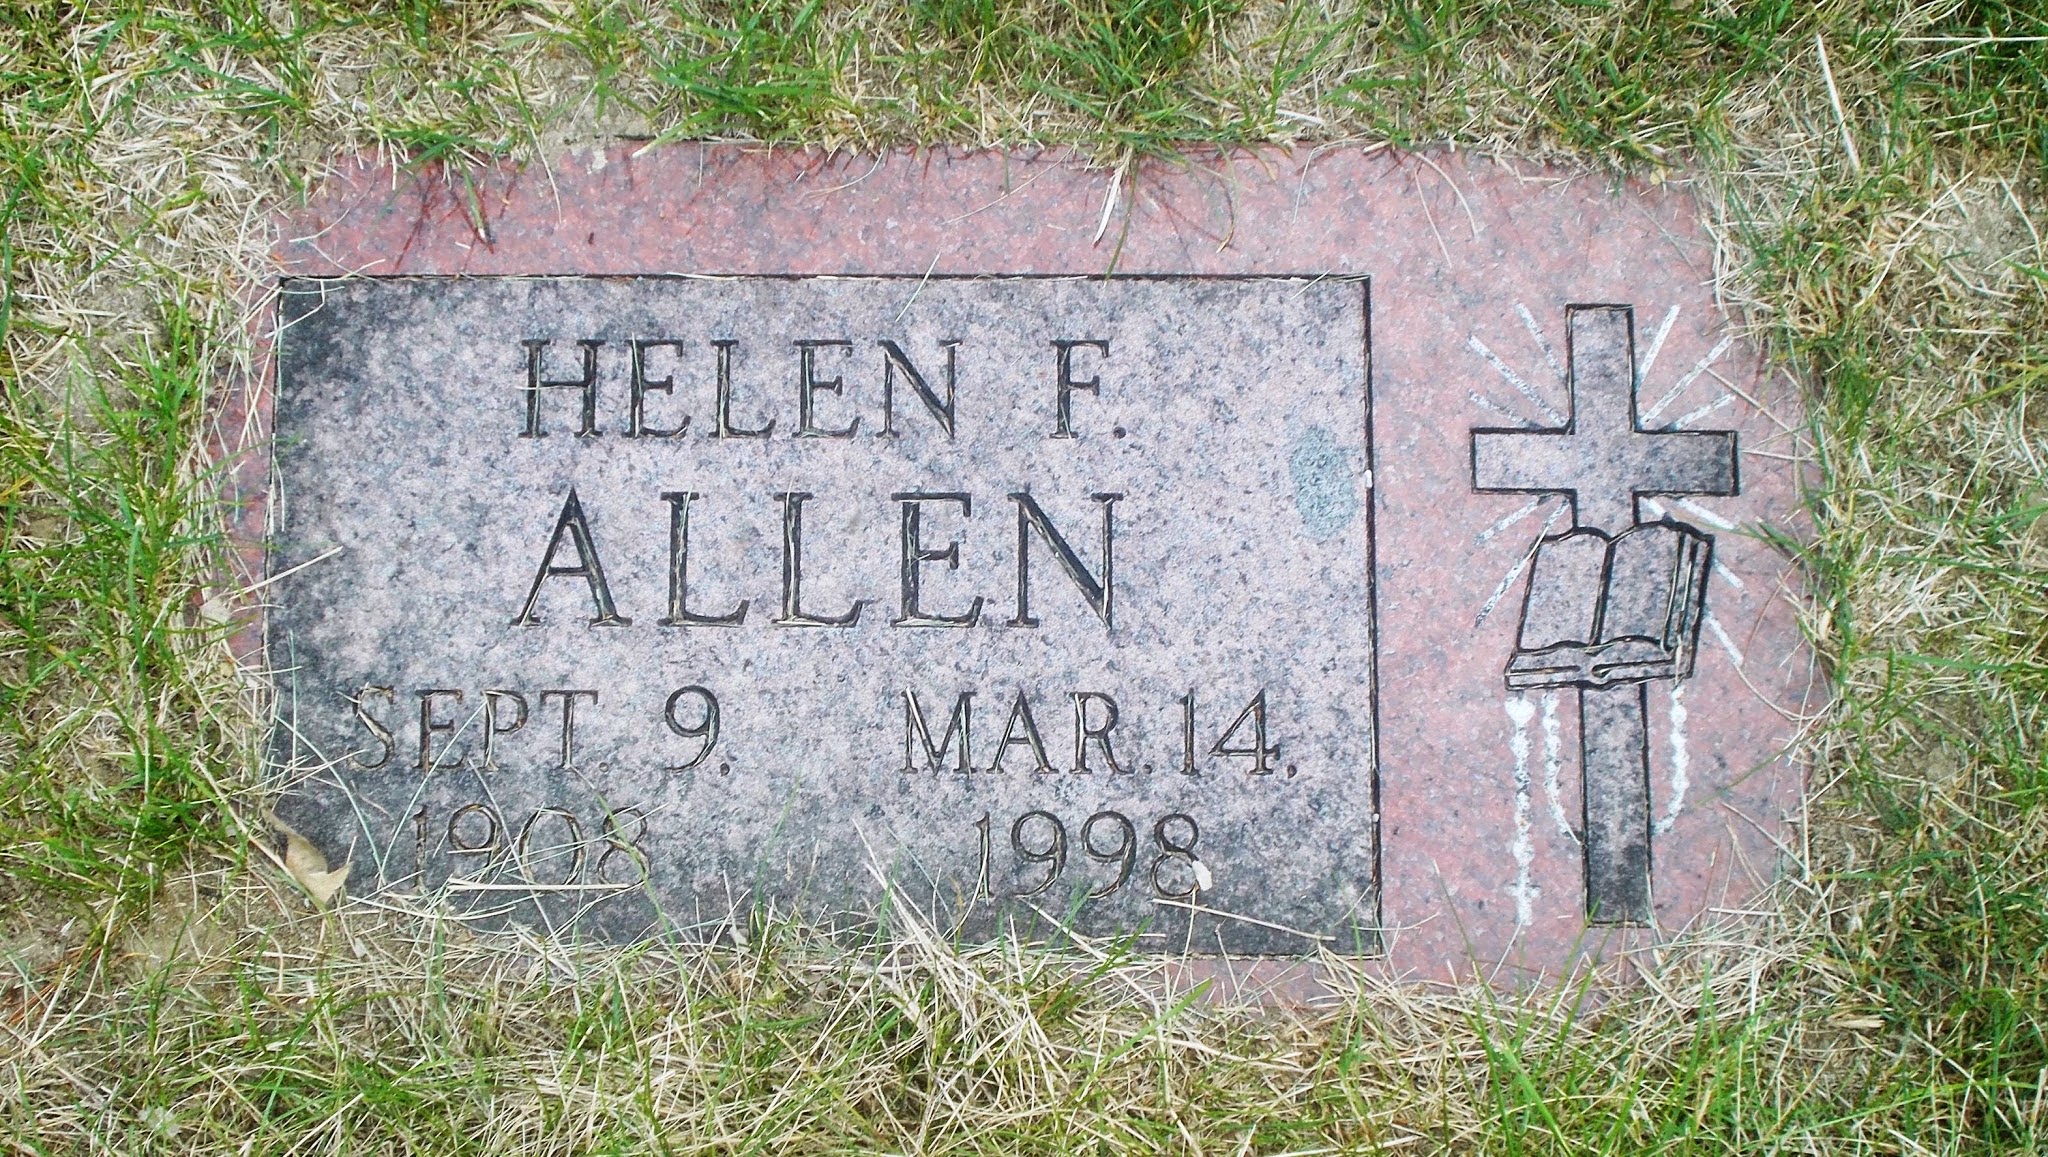 Helen F Allen